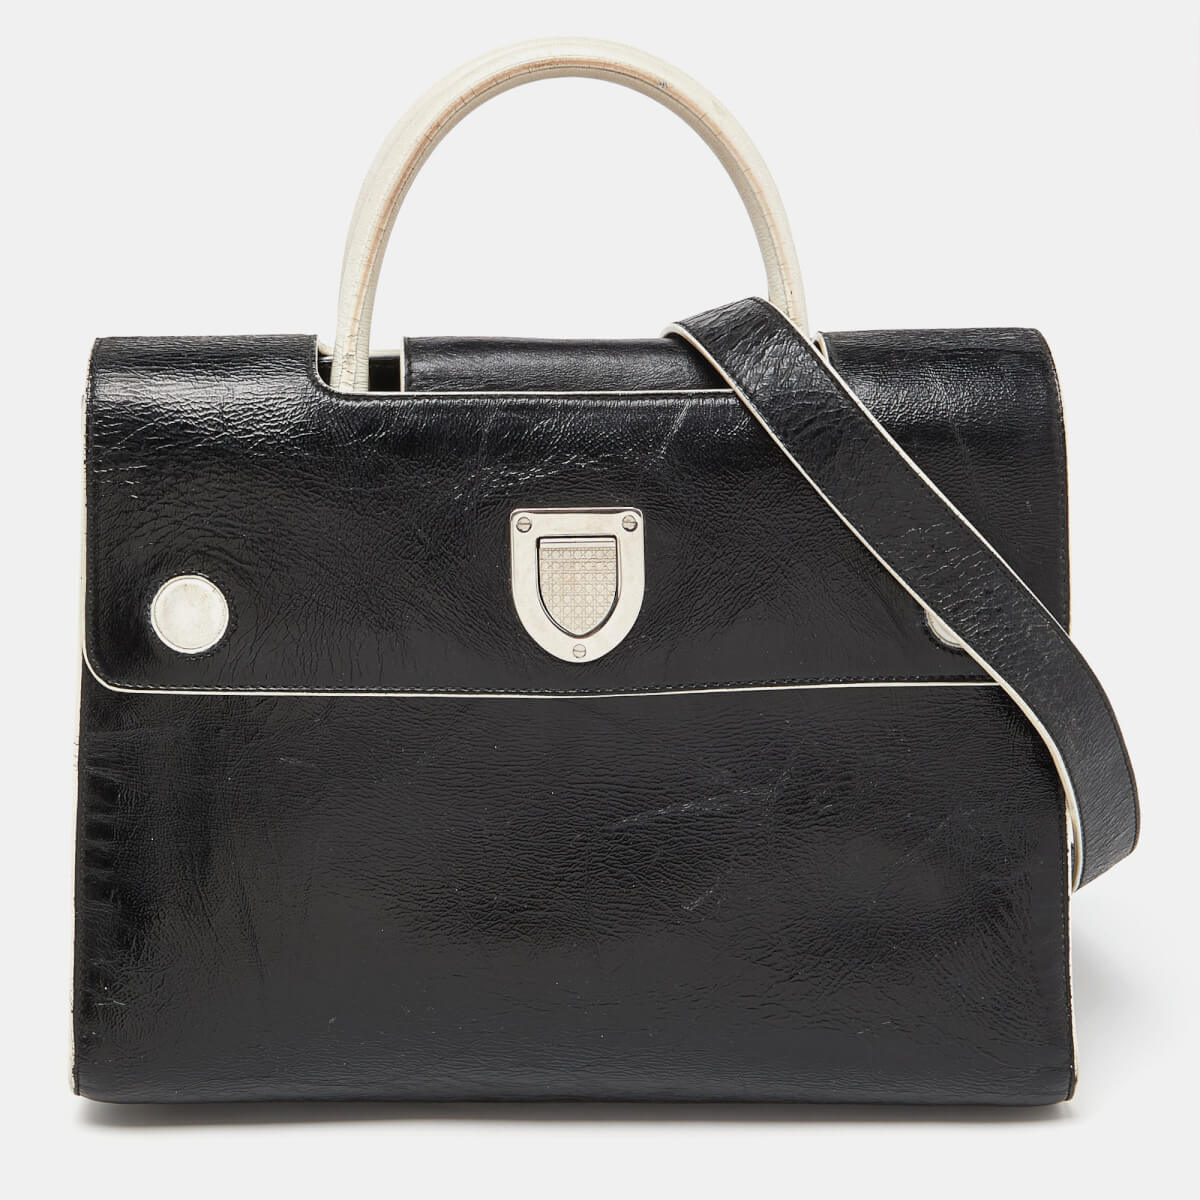 Dior Black/White Leather Medium Diorever Bag